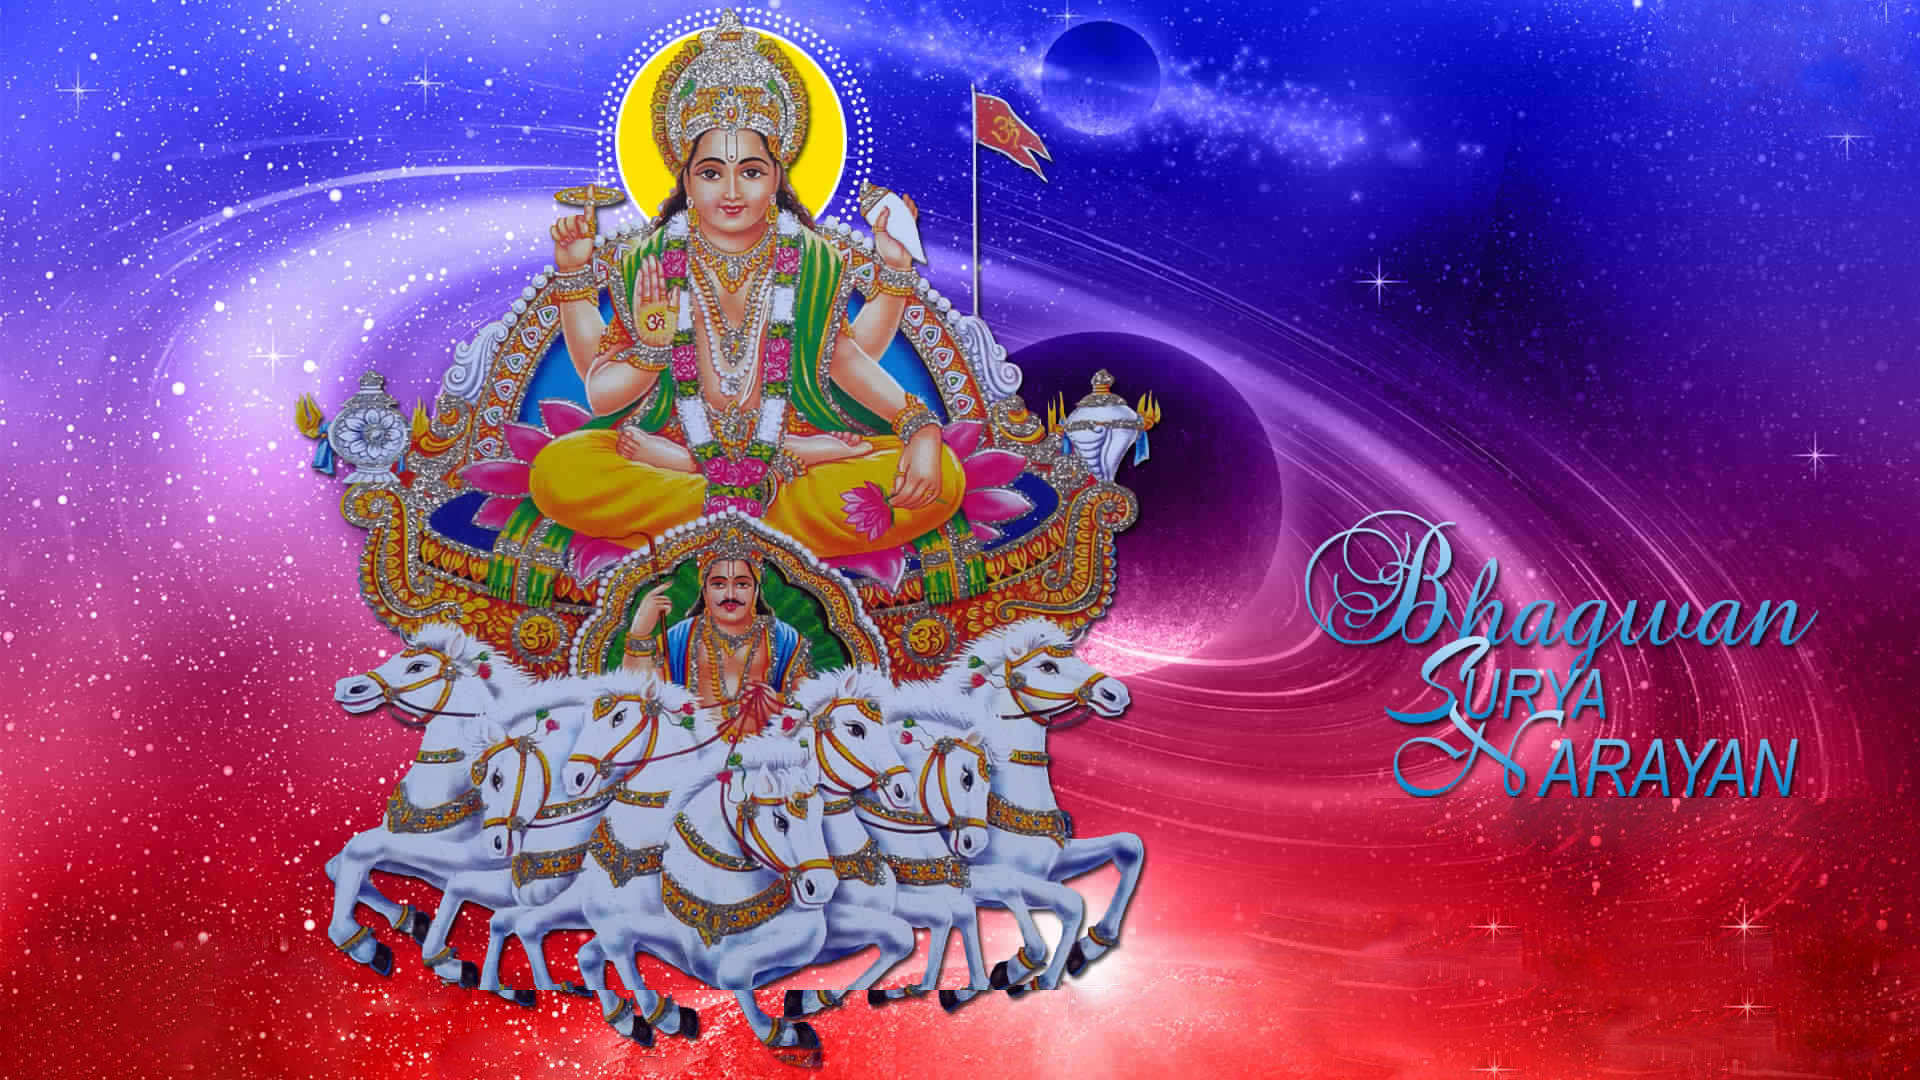 Surya Bhagwan Galaxy Background Wallpaper